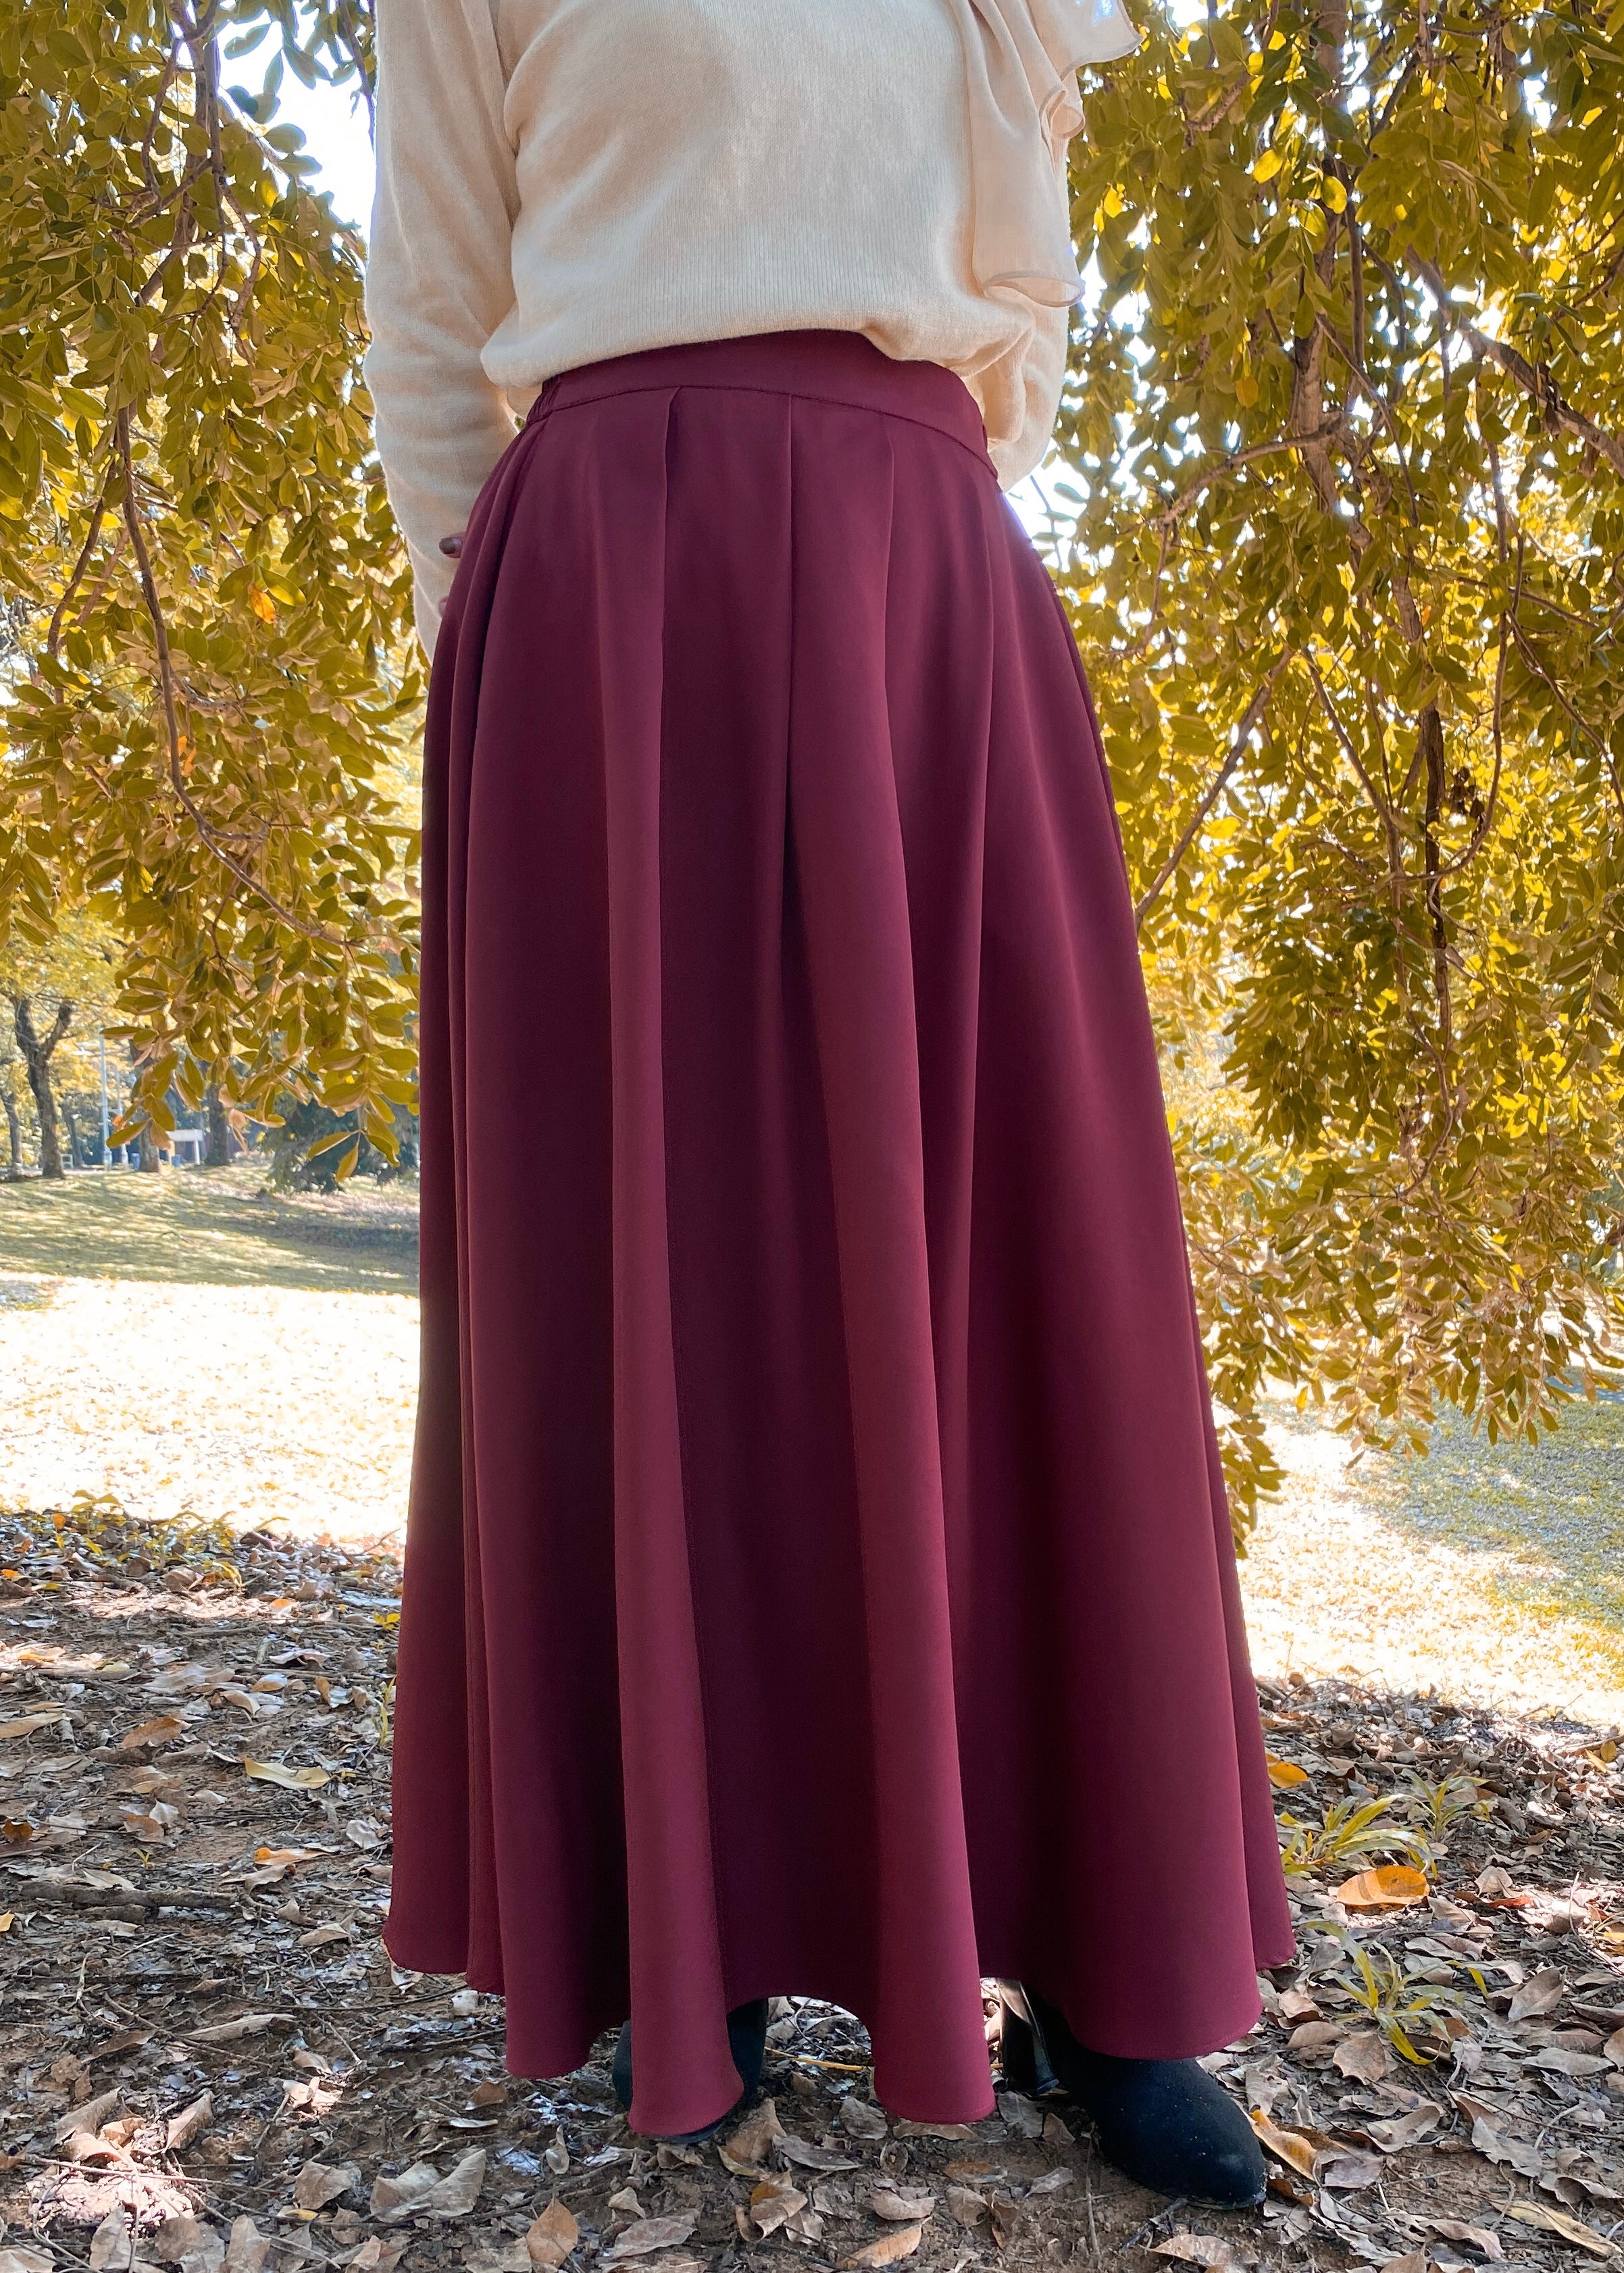 Alexia Skirt in Crimson